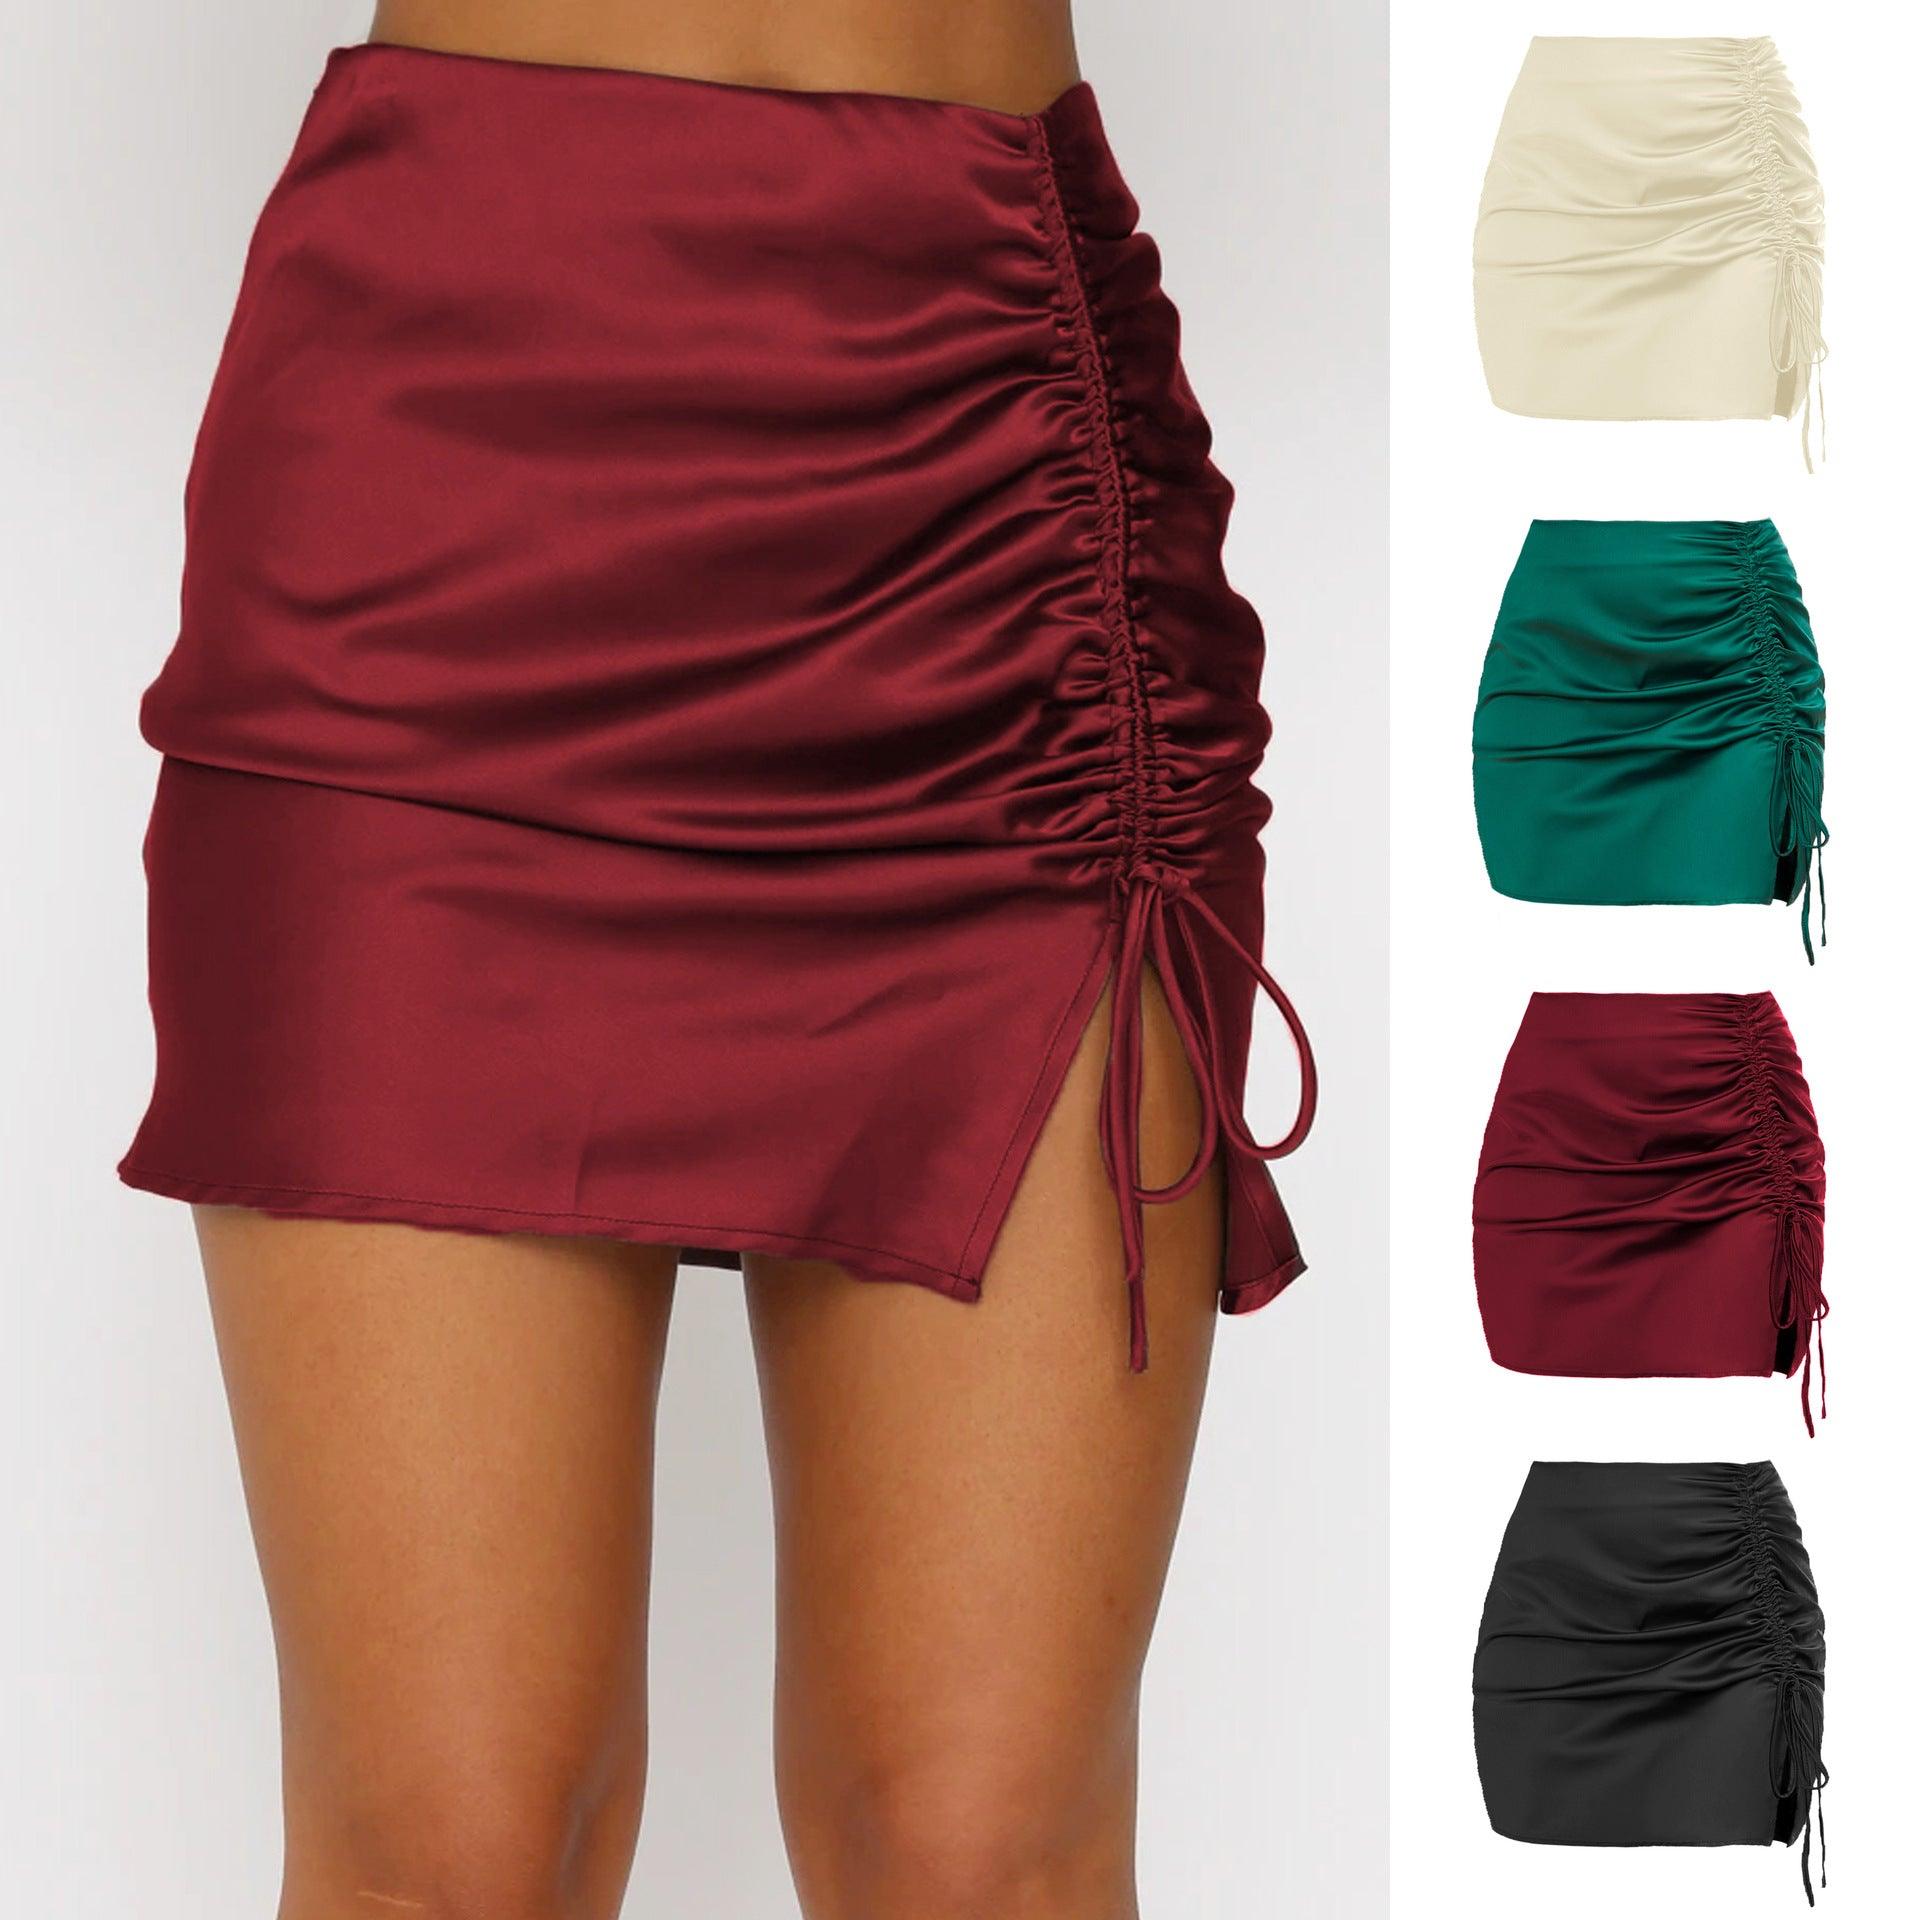 Elegant High-Waist Pleated Skirt for Women – Timeless Fashion Staple - Glinyt